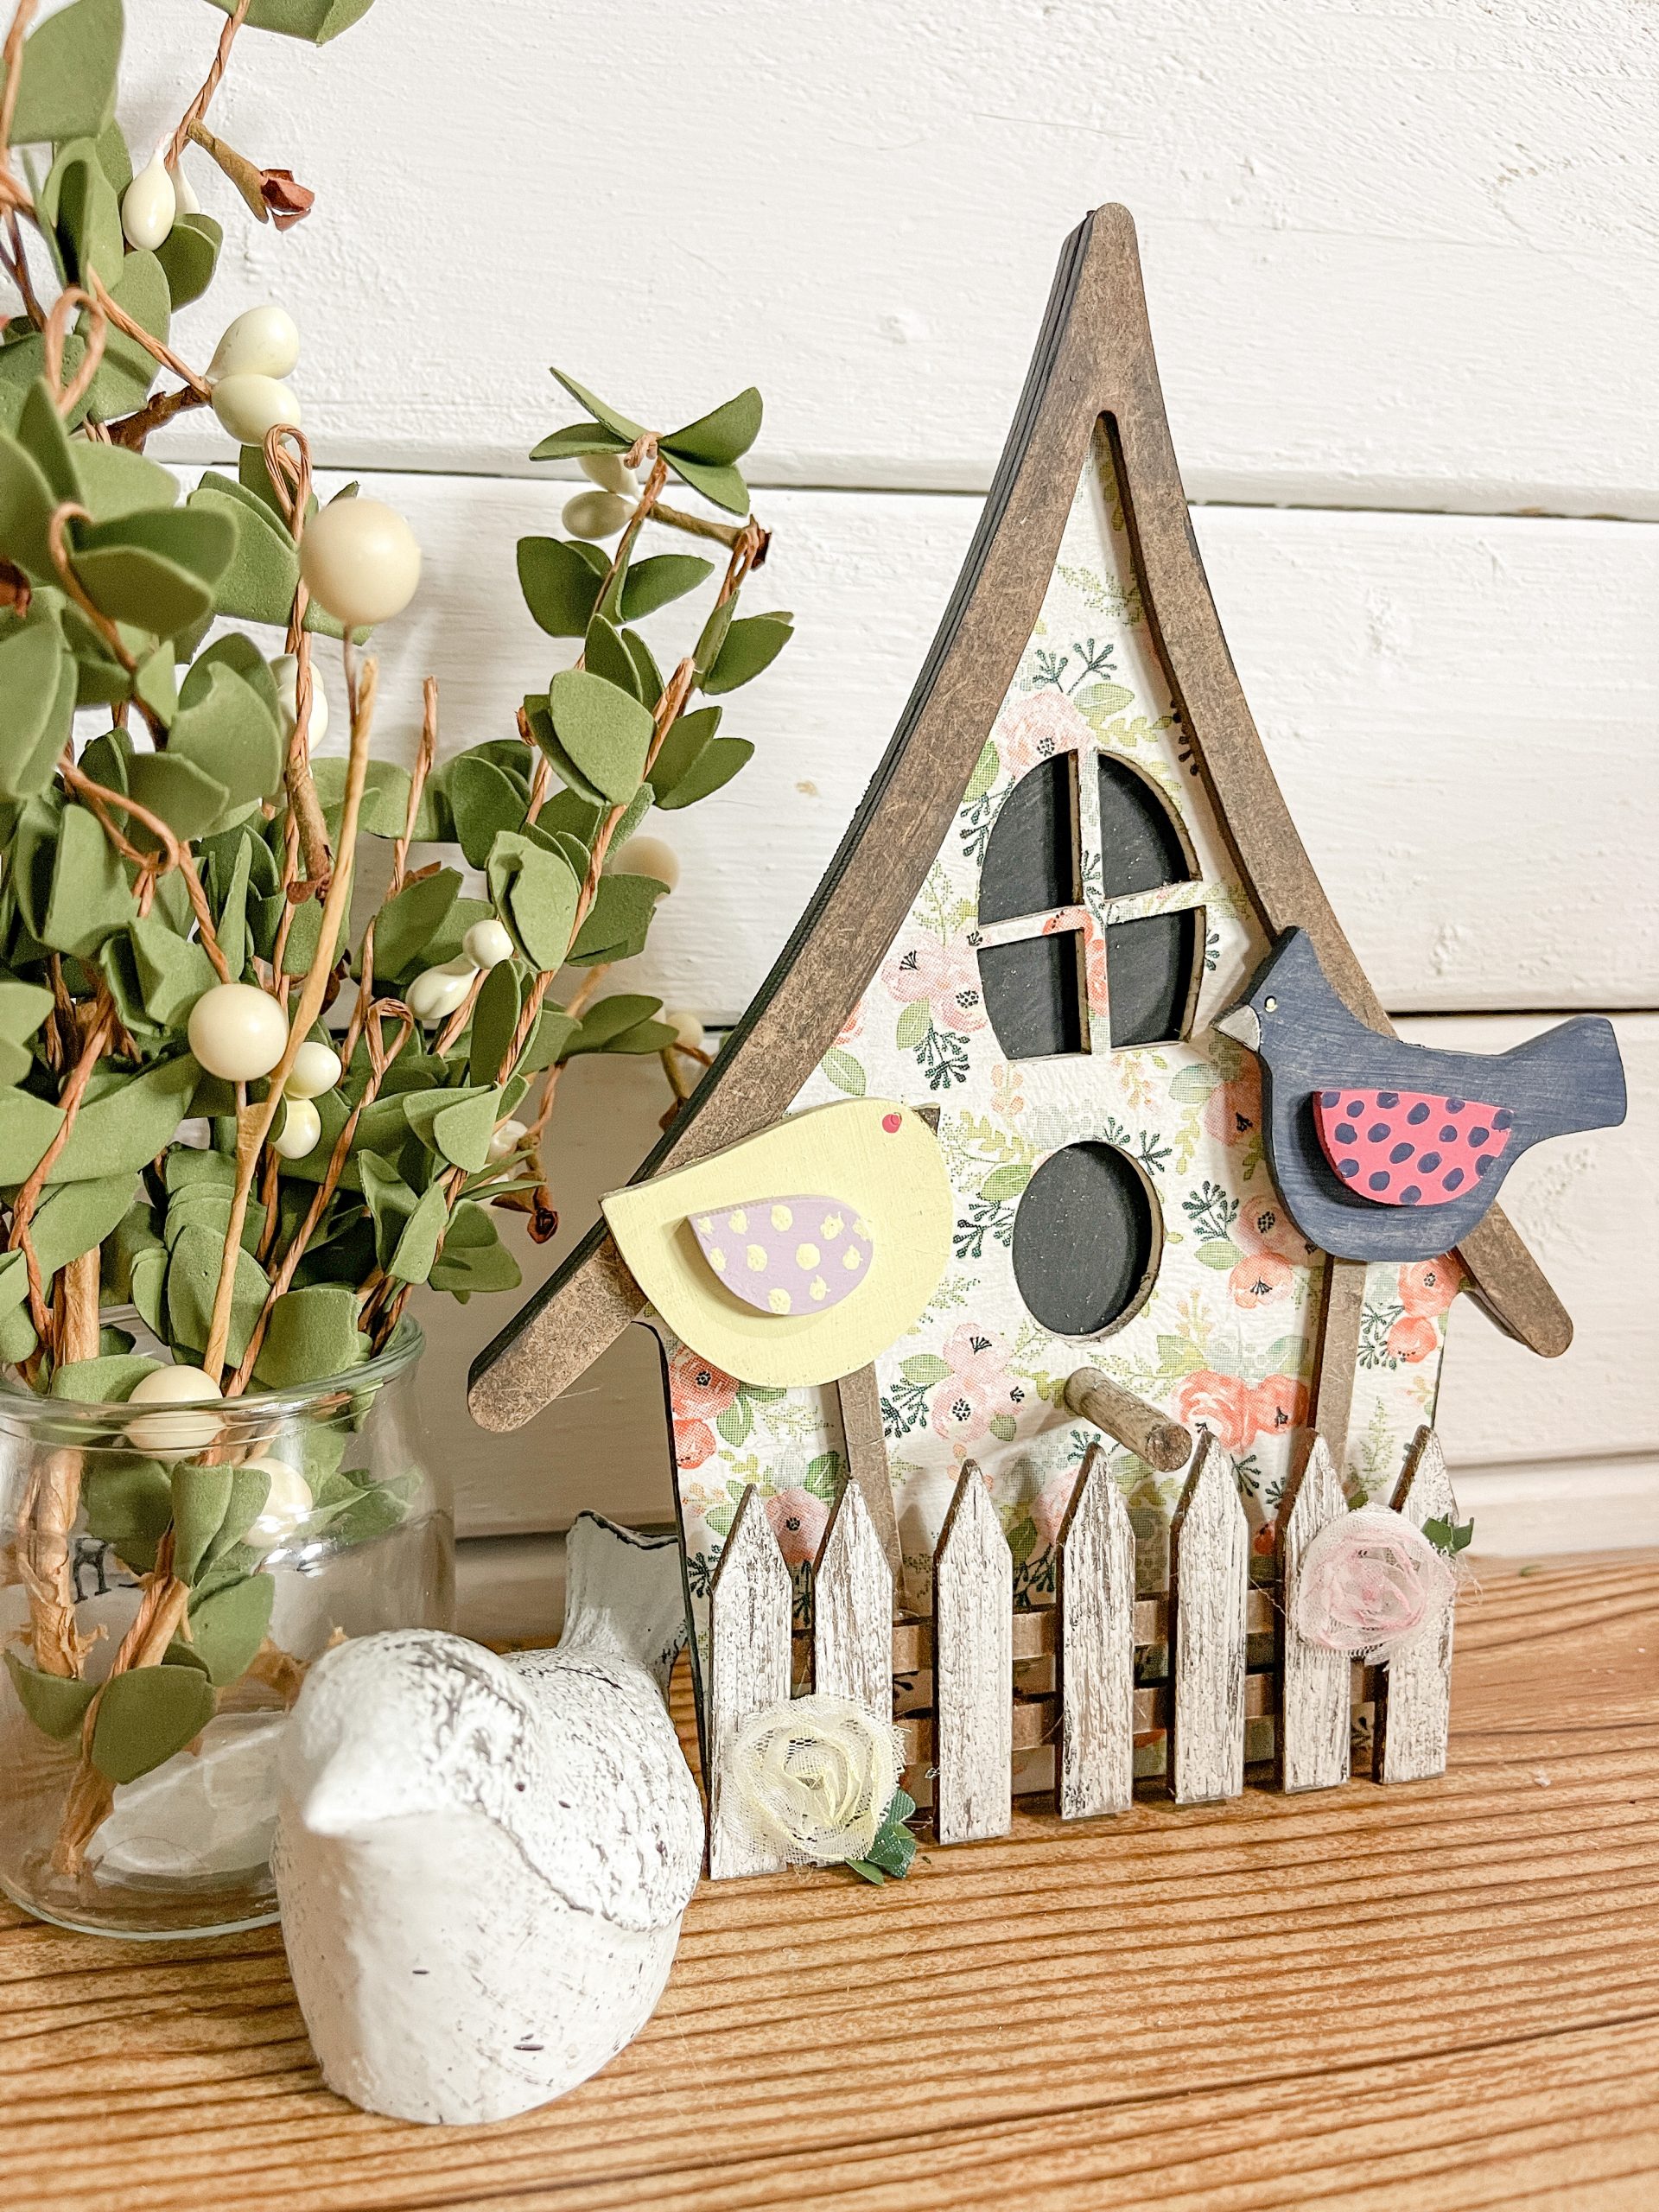 DIY Decorative Birdhouse Craft Kit